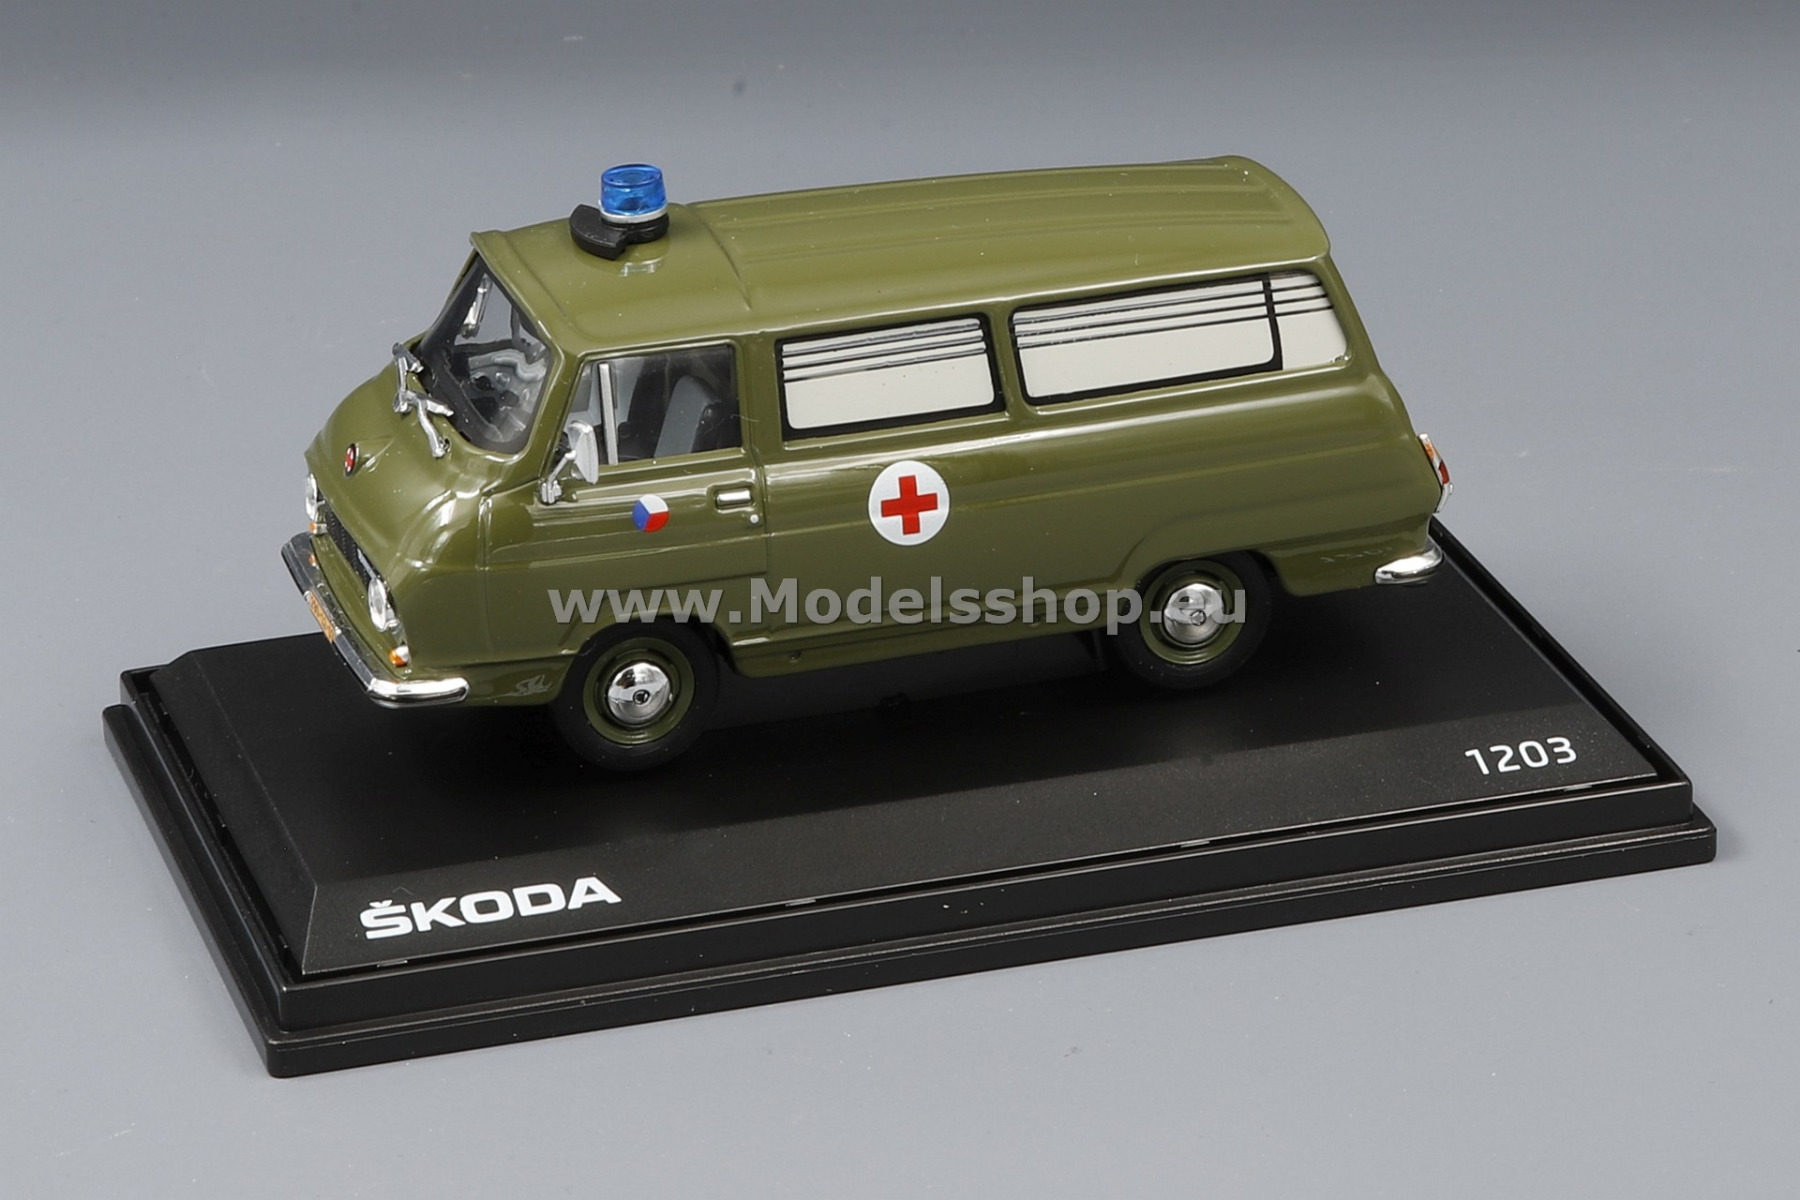 Skoda 1203, Czech army  ambulance